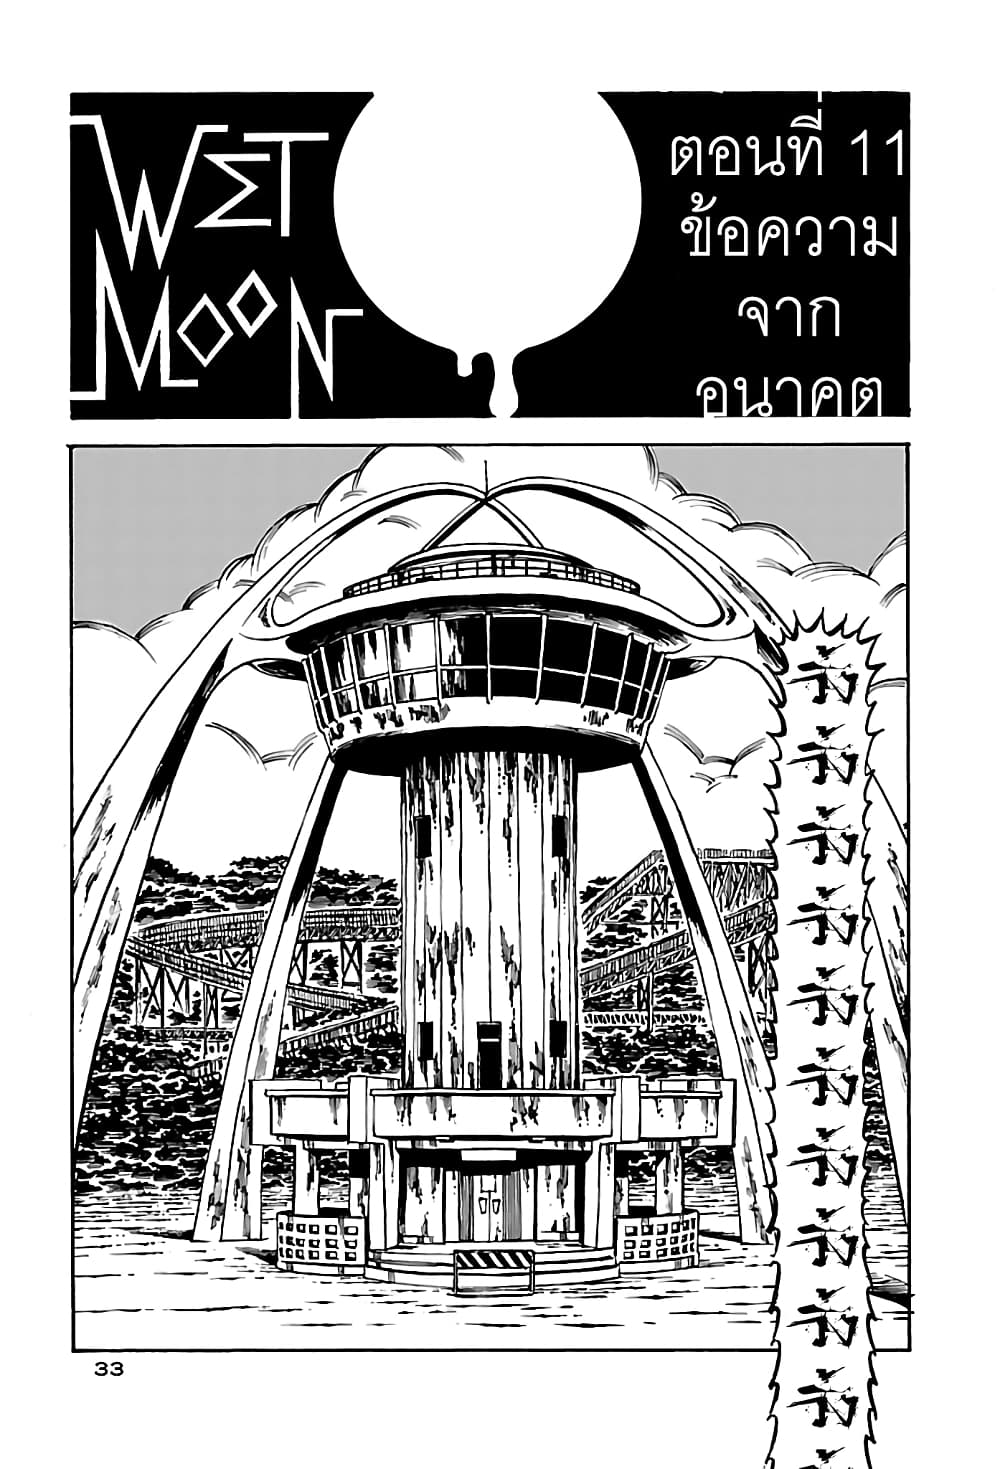 Wet Moon 11 (1)